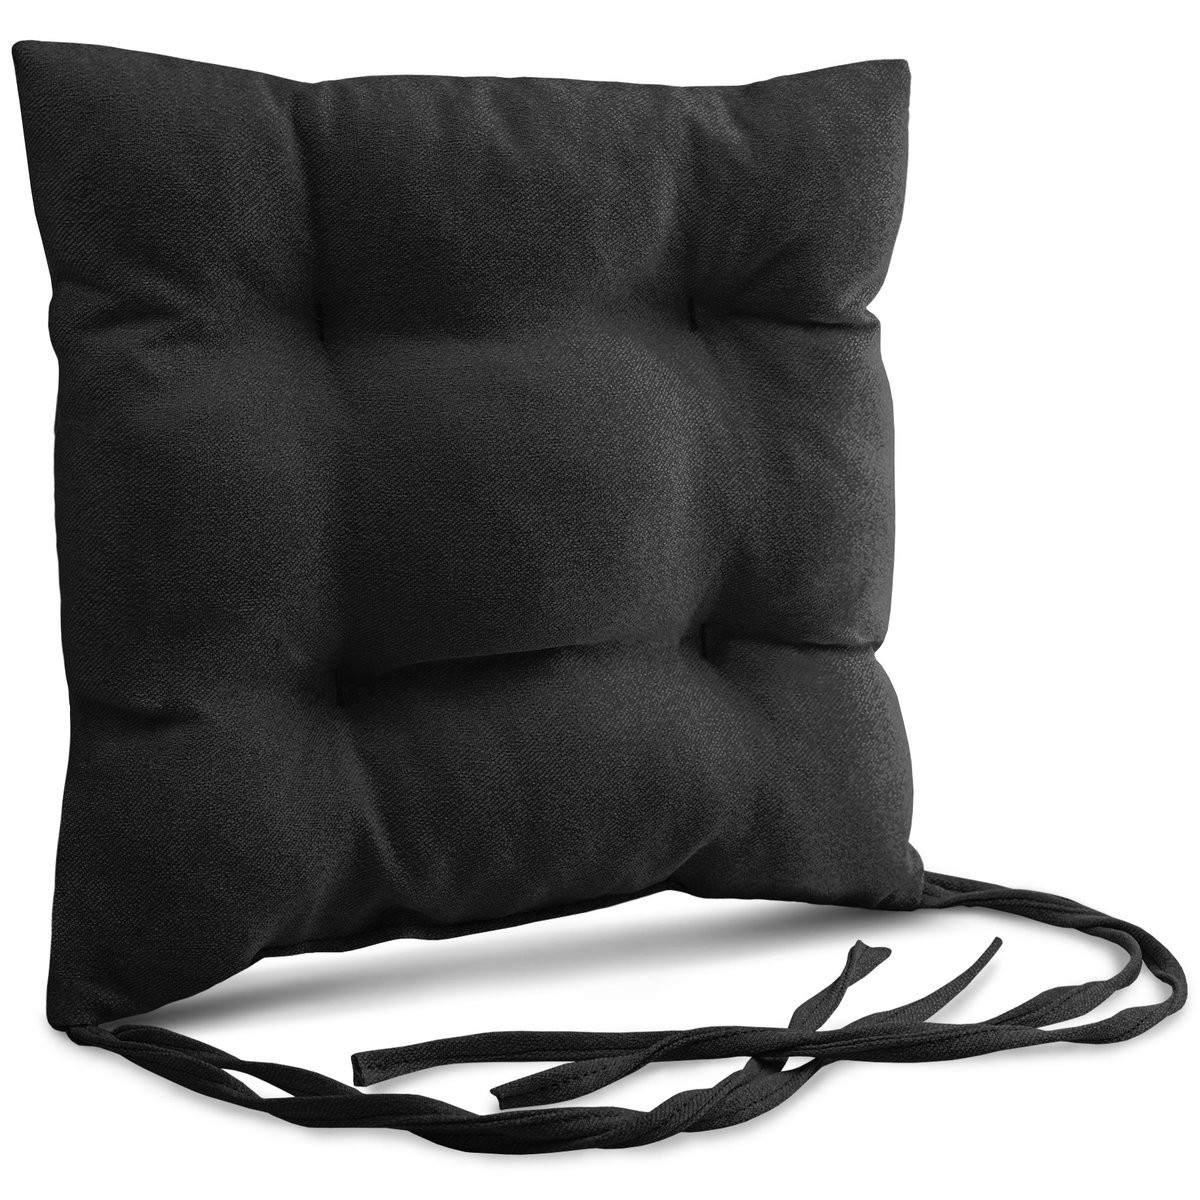 Poduszka ogrodowa na krzesło 40x40 cm w kolorze czarnym ze sznureczkami do przywiązania